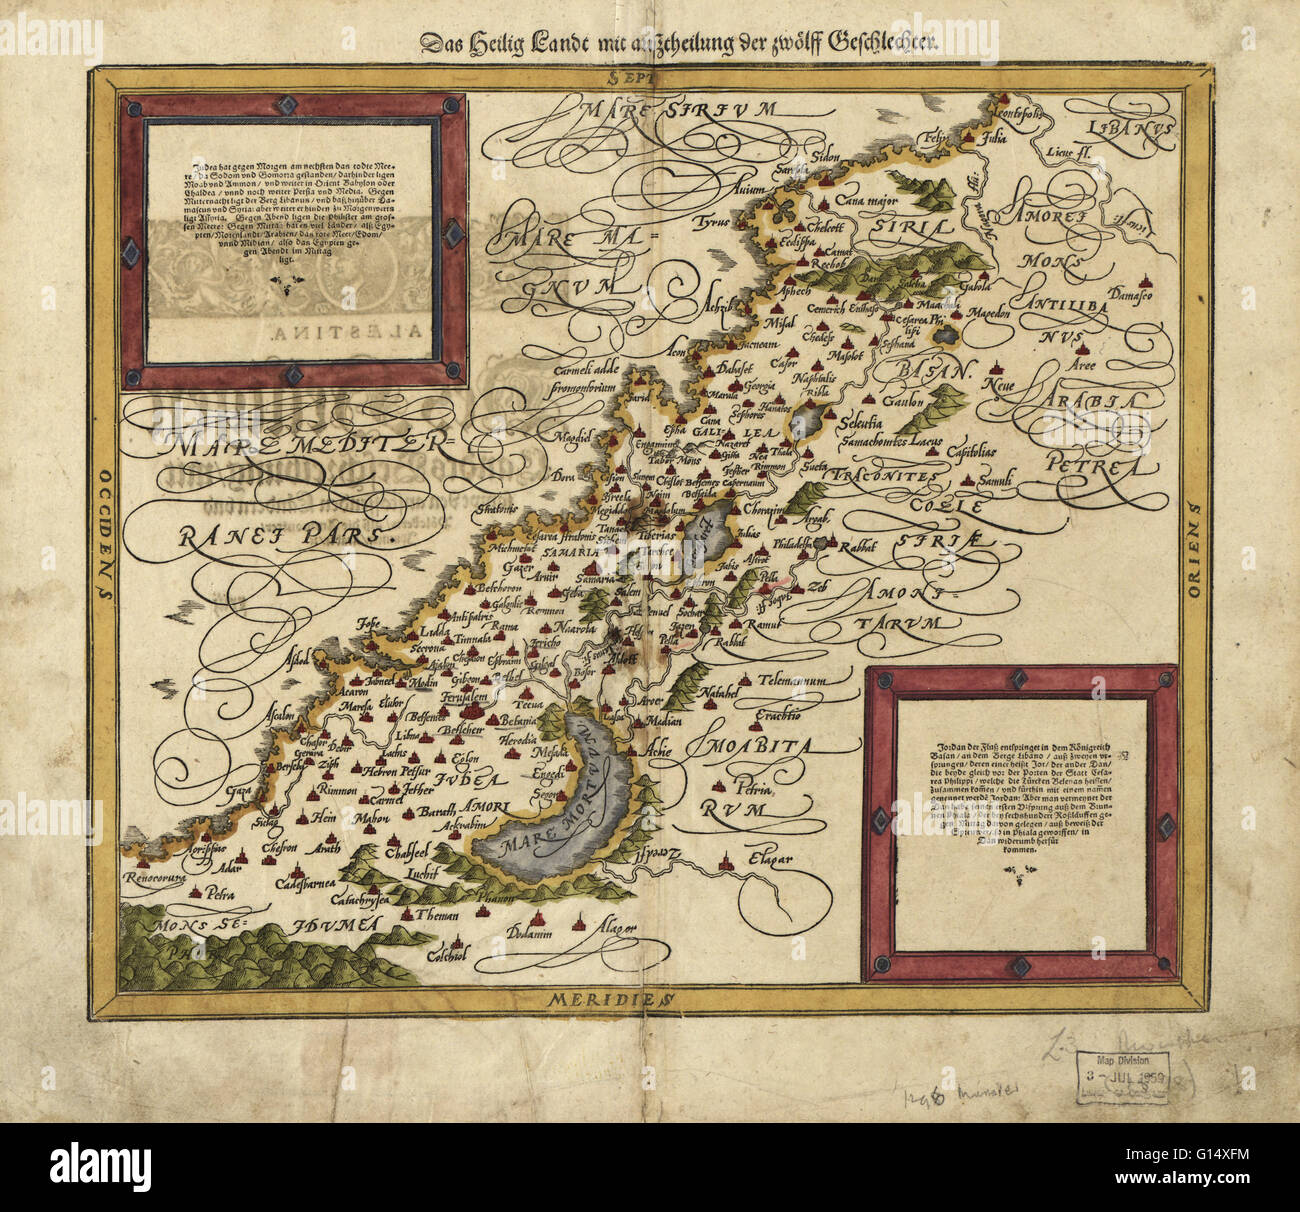 16. Jahrhundert-Karte von Palästina. Norden ist oben rechts. Veröffentlicht im Jahre 1588, zeigt diese deutschen Karte die Geographie von Palästina, Centerd auf der Fläche, die später der Staat Israel. Die Inschriften sind in deutscher Sprache, und die Ortsnamen sind in lateinischer Sprache. Stockfoto